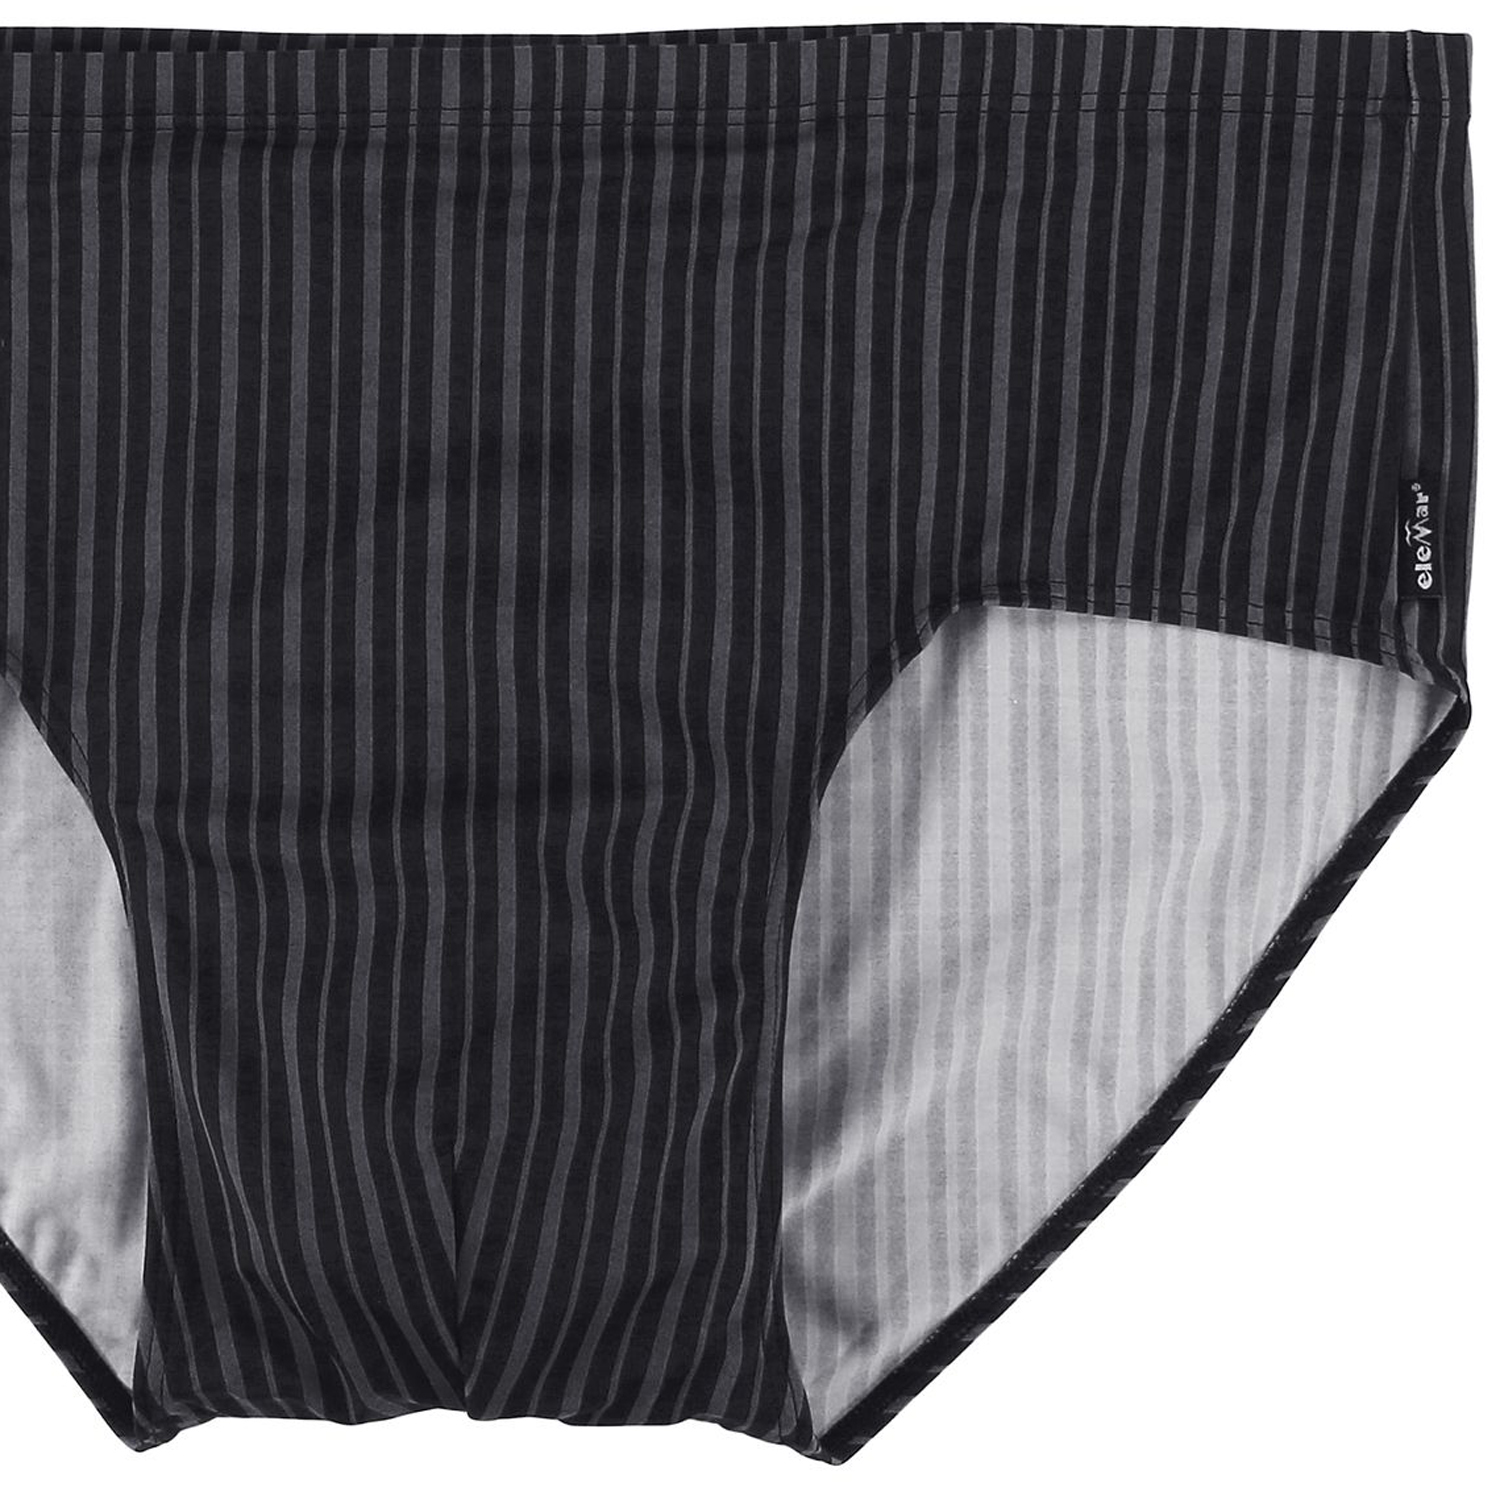 ELEMAR Männer Badeslip Badehose Schwimmhose Slip gestreift von in großen Größen bis 10XL in schwarz-grau